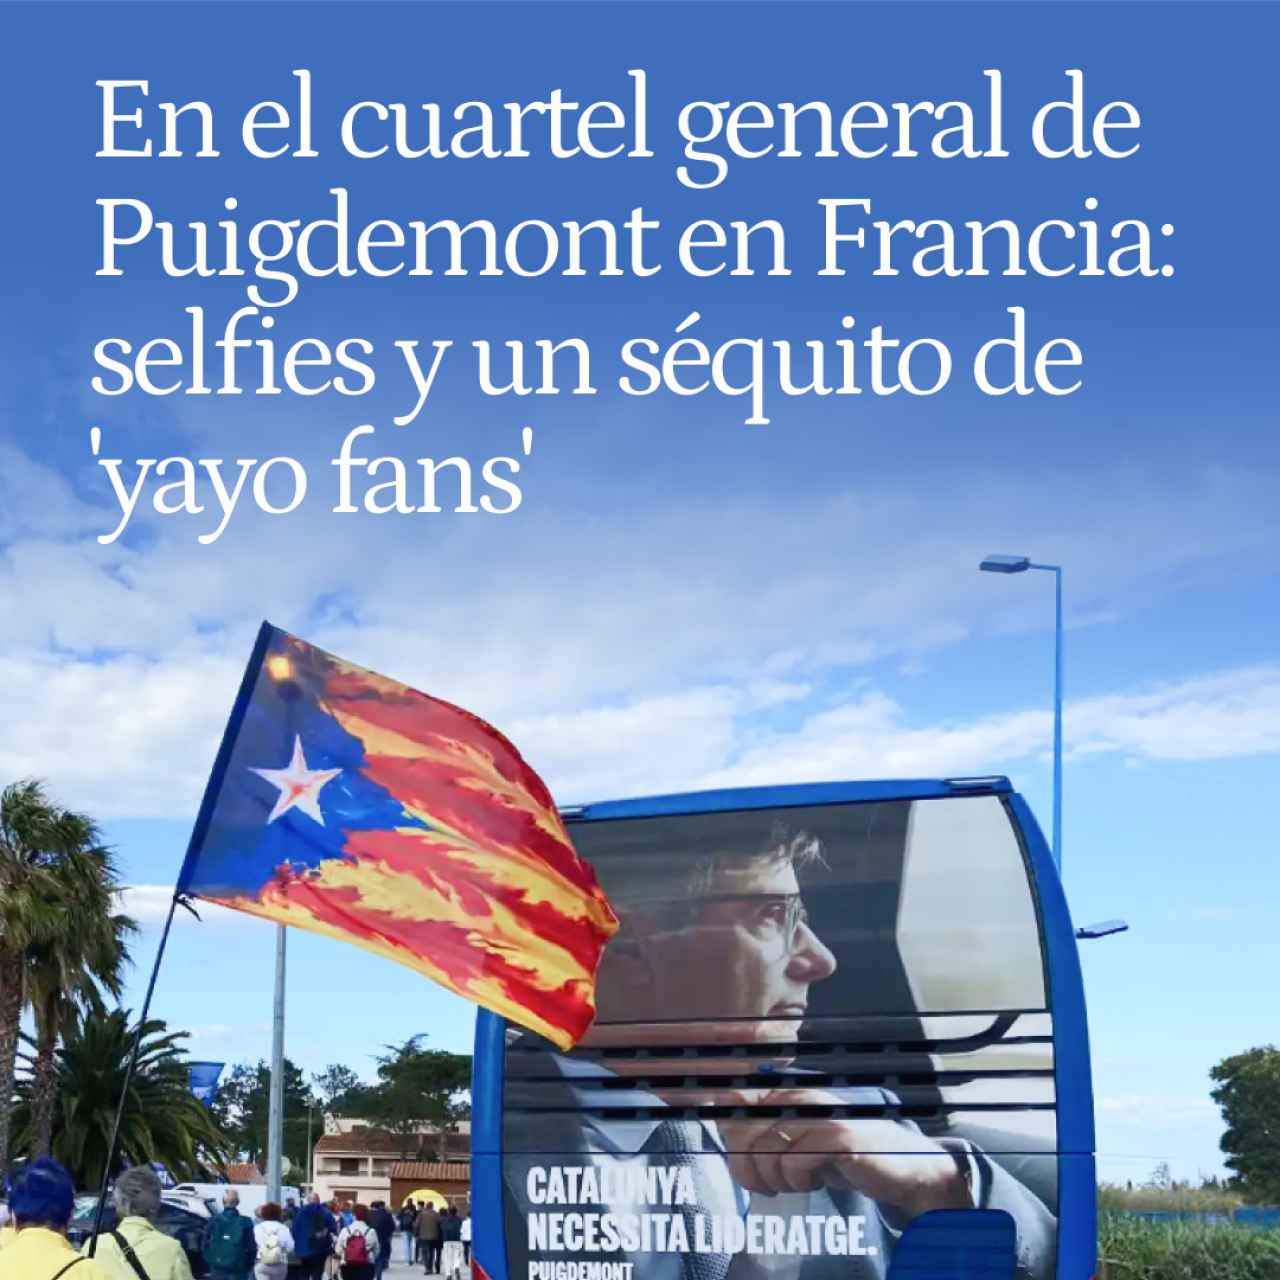 En el cuartel general de Puigdemont en Francia: el 'speaker' del Barça, selfies y un séquito de 'yayo fans'